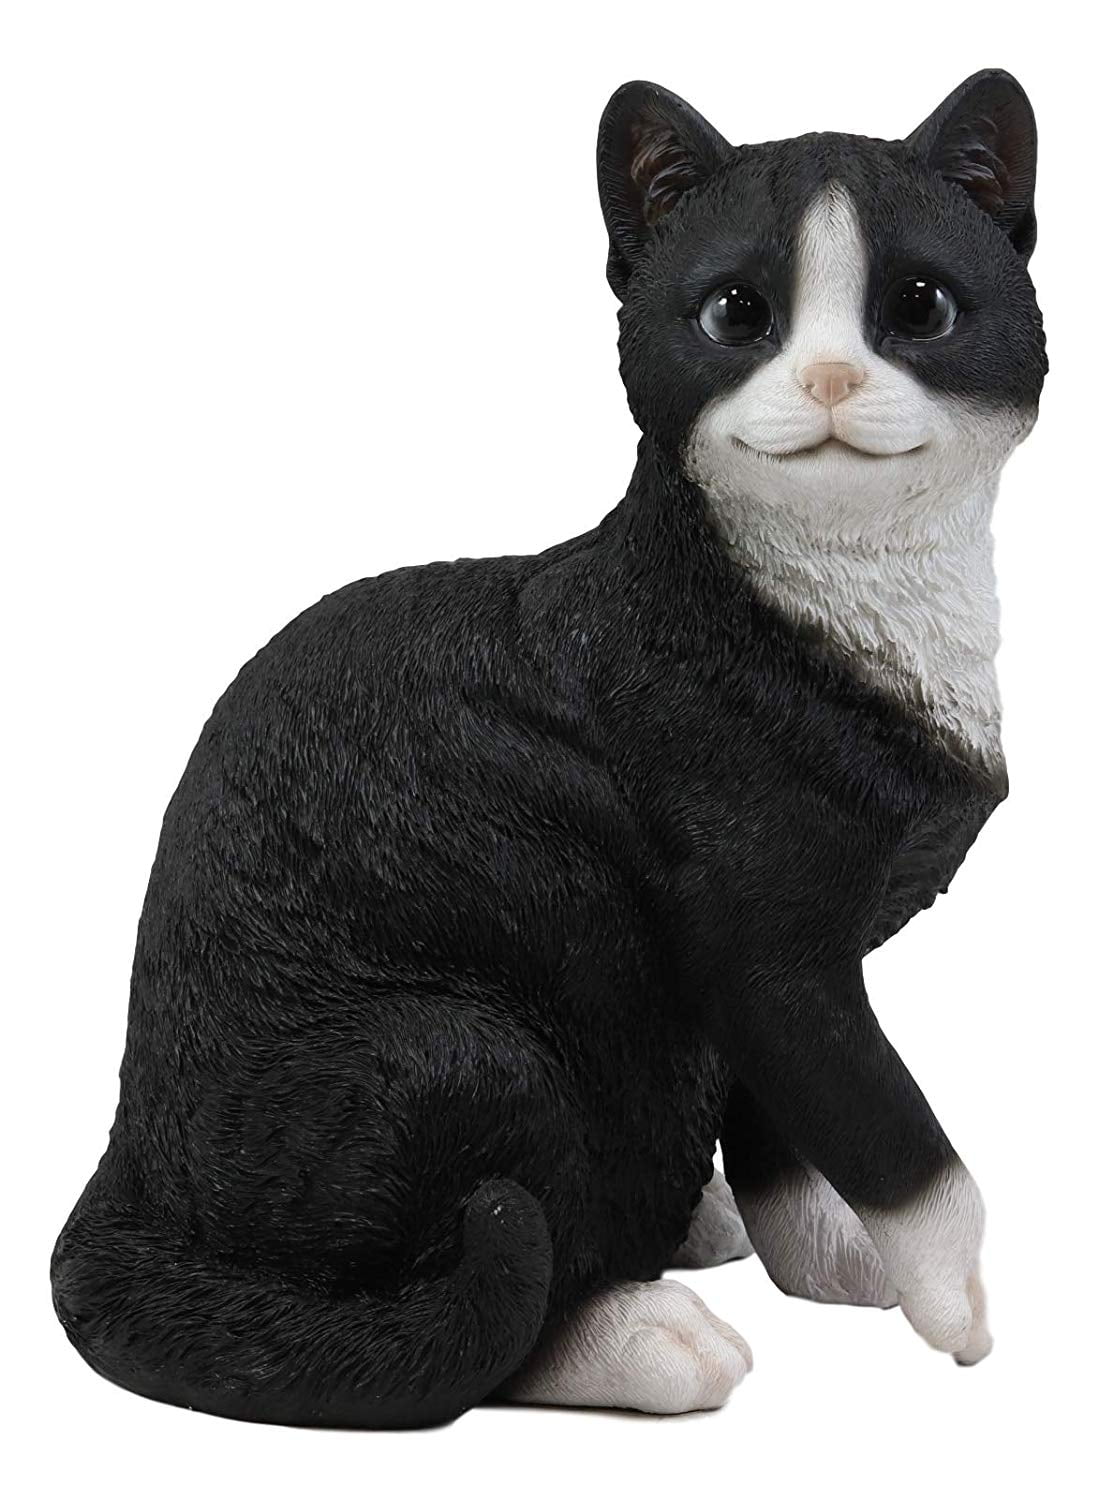 Ebros Lifelike Sitting Tuxedo Black and White Cat with Paw Up Statue 10